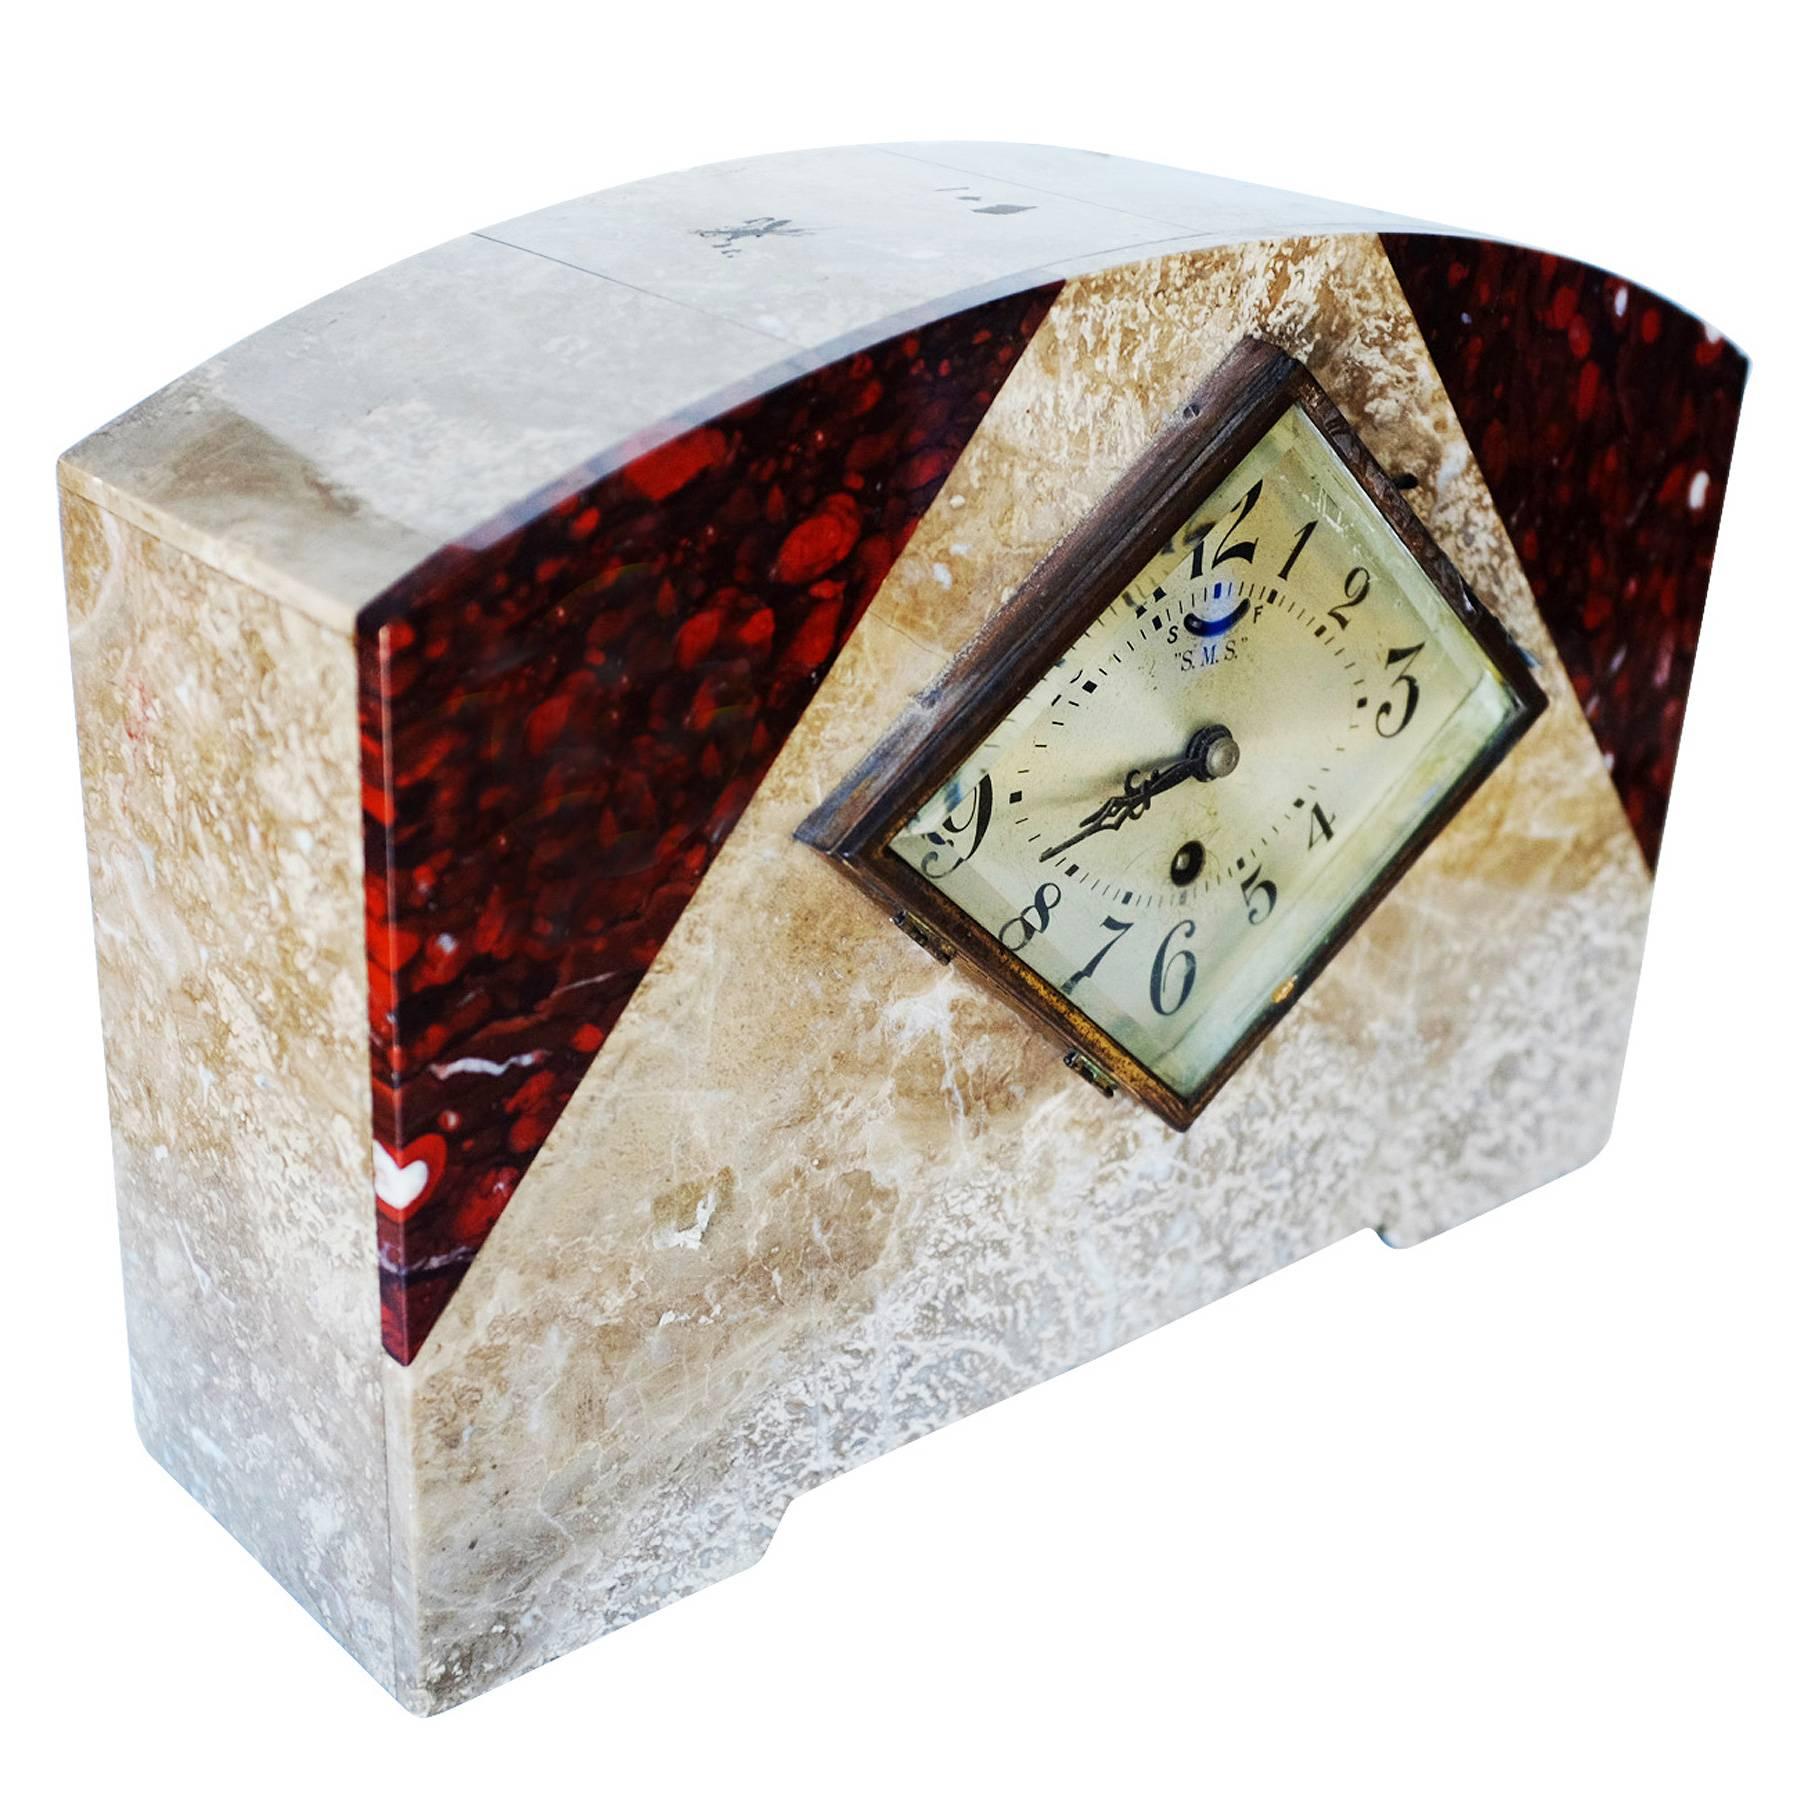 Garniture de cheminée Art Déco en marbre italien comprenant une horloge et deux garnitures assorties. 

Horloge : 10